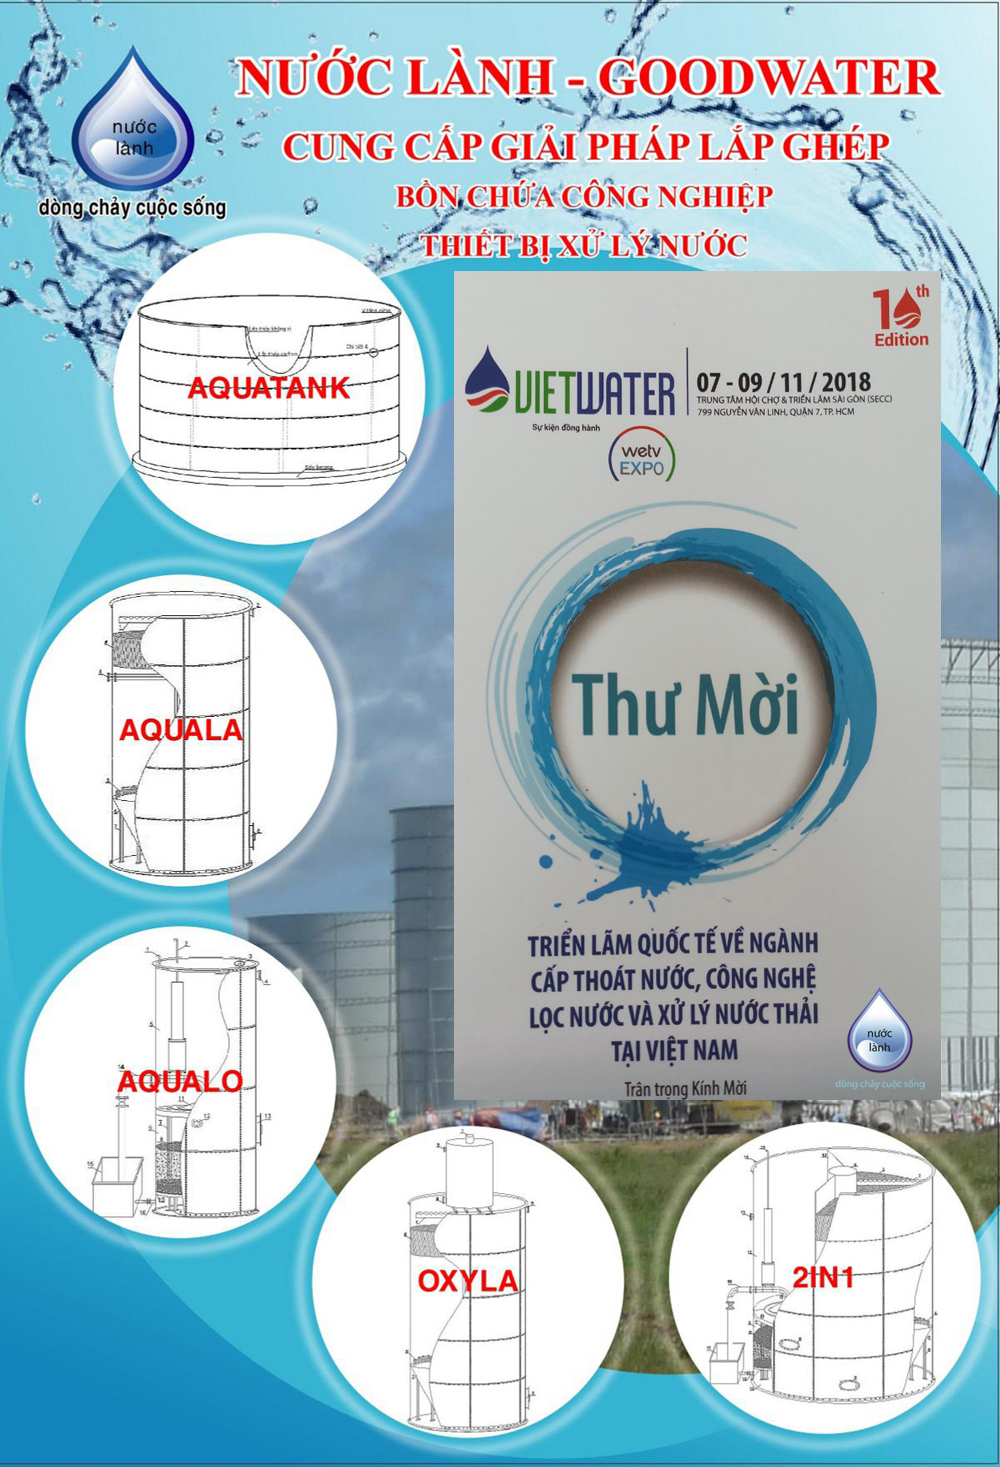 Tham gia Triển lãm Quốc Tế về ngành cấp thoát nước, công nghệ lọc và xử lý nước thải tại Việt Nam